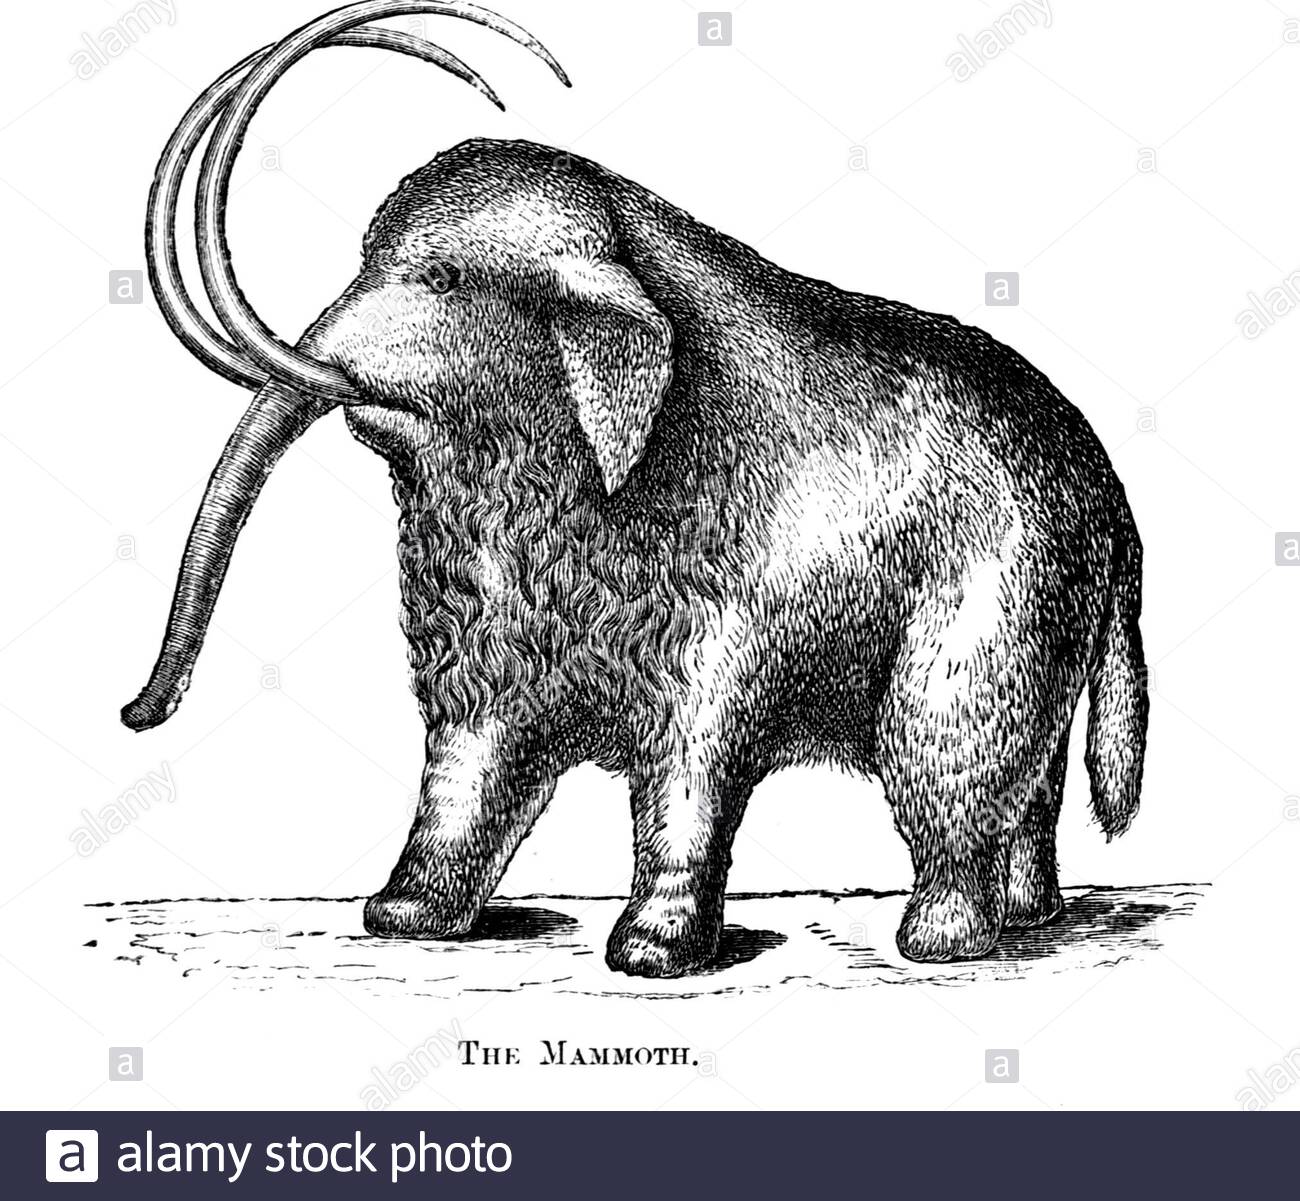 Mammoth, illustrazione d'epoca del 1886 Foto Stock